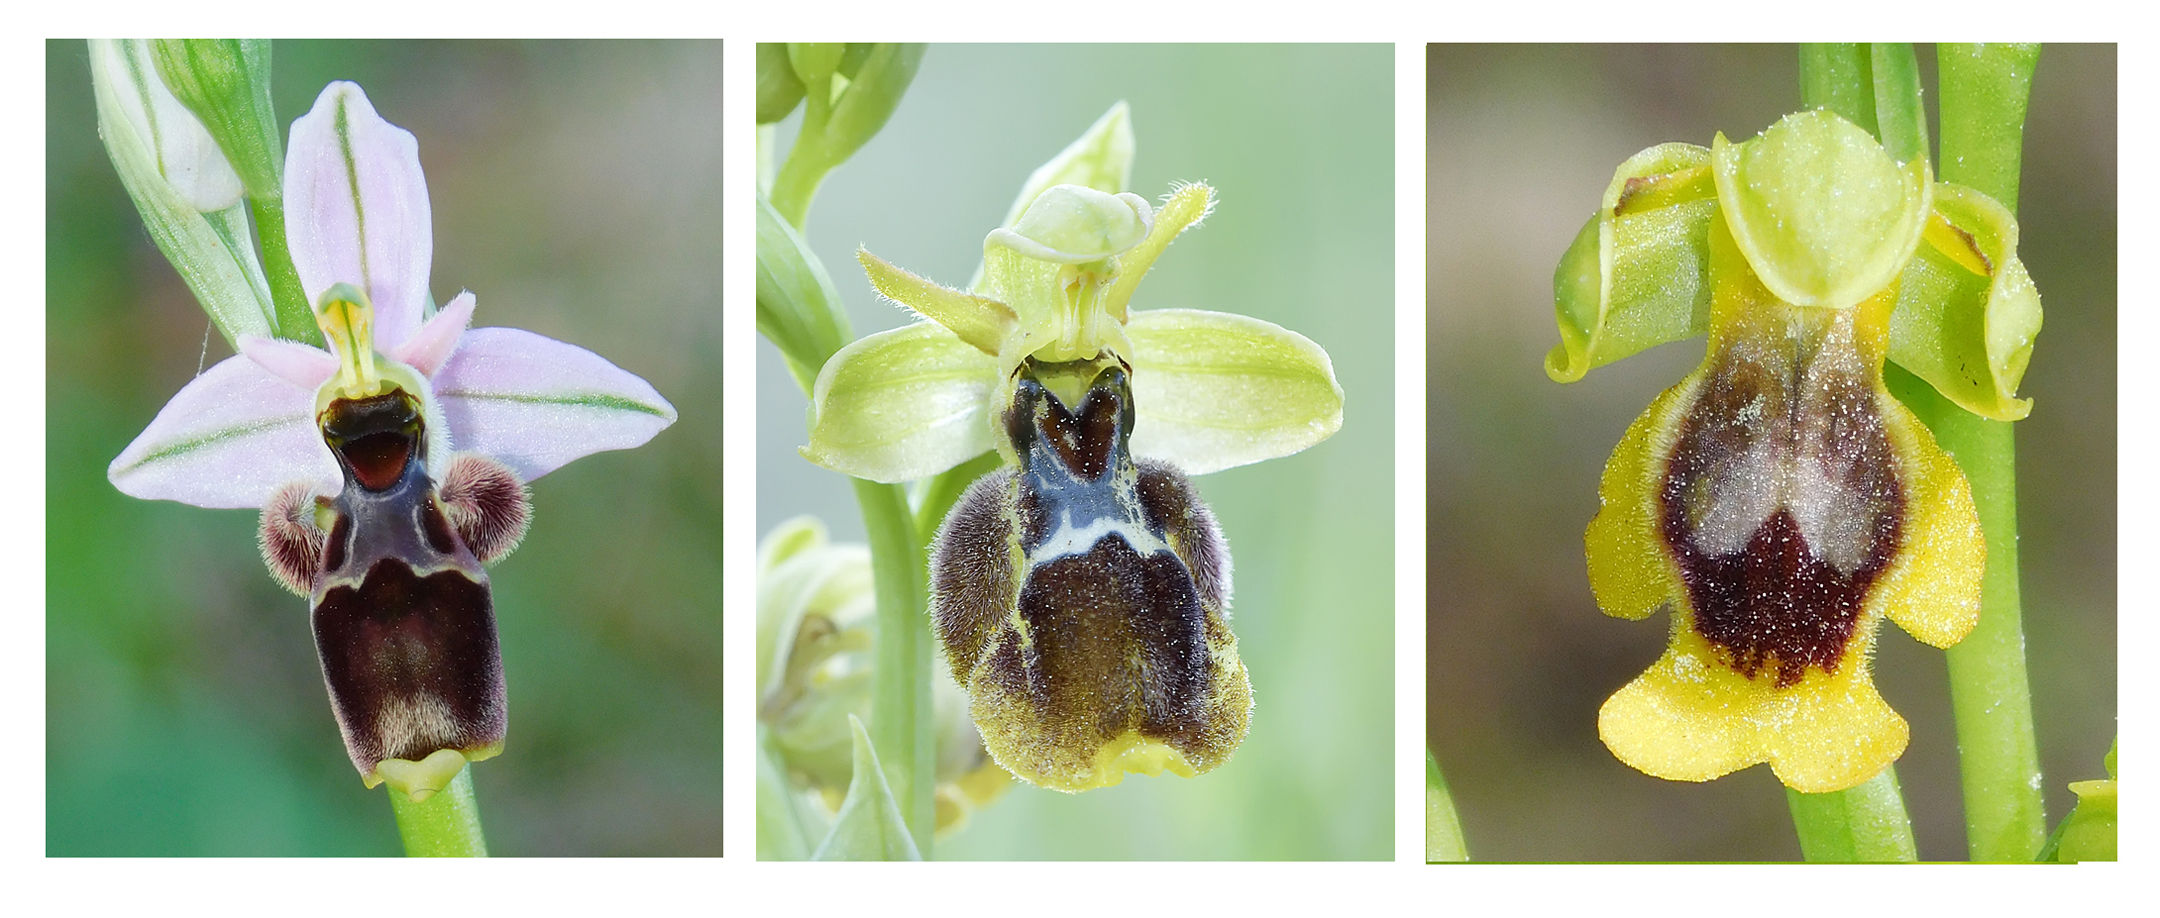 Comparativa entre las flores de Ophrys scolopax (izquierda), Ophrys ×diazii (centro) y Ophrys alpujata (derecha) -M. Becerra